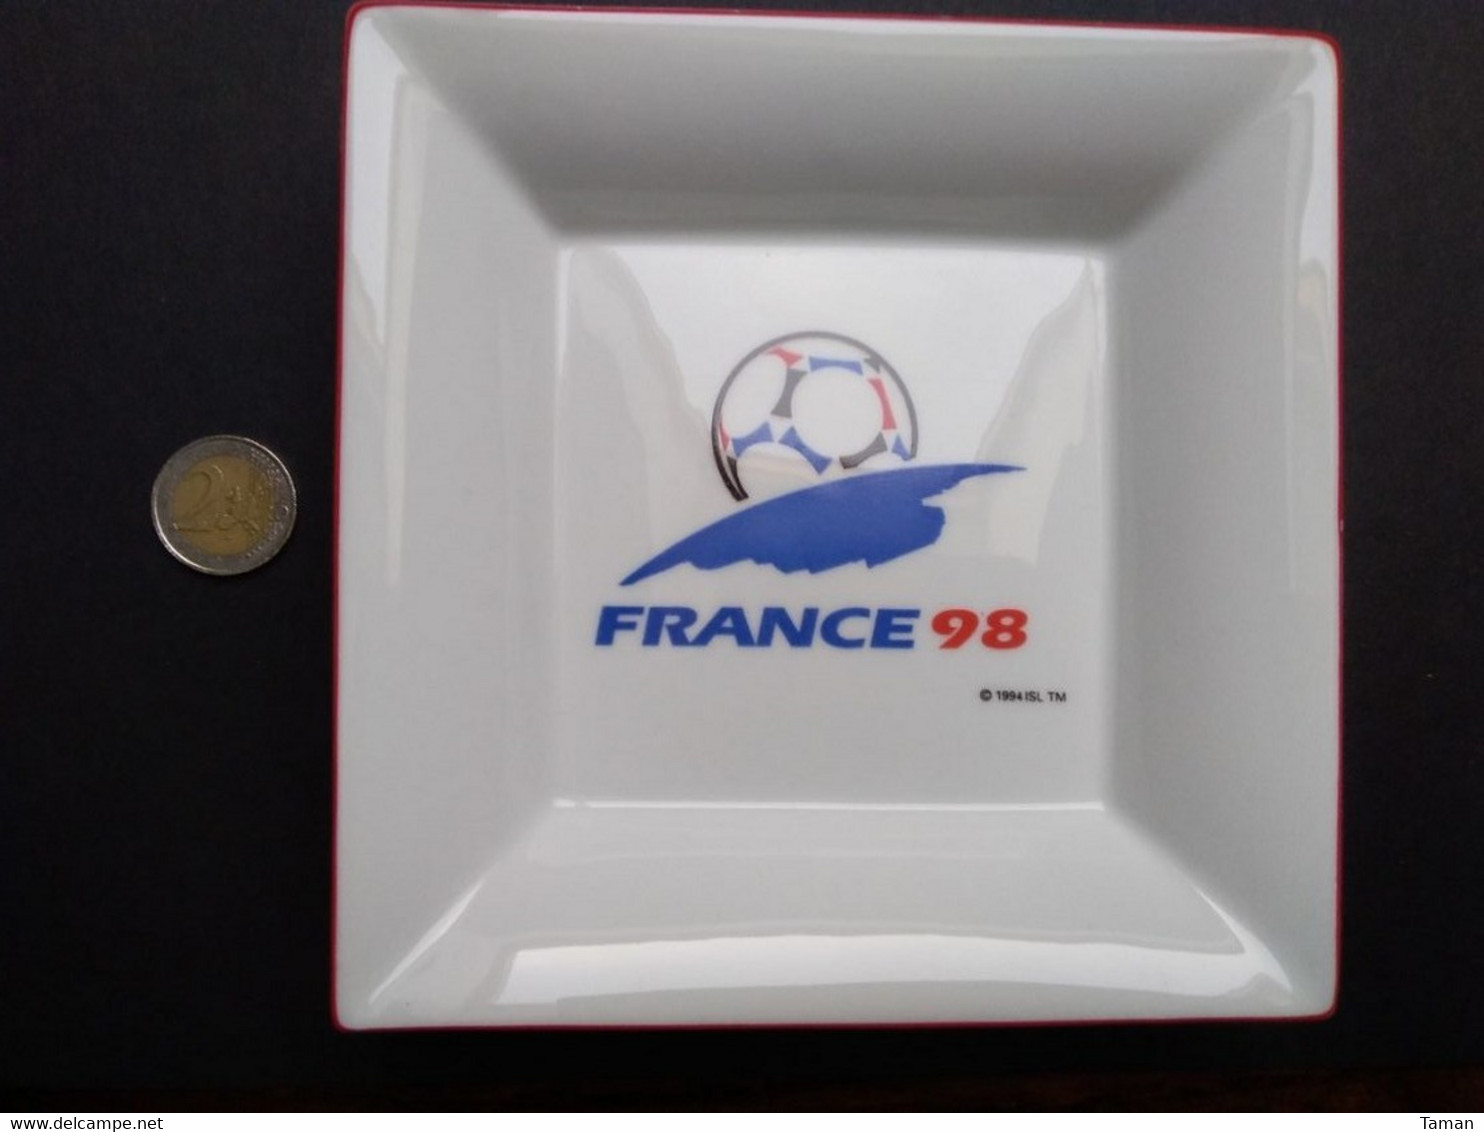 France 98  -  Coupe Du Monde De Foot-ball 1998  -  Cendrier - Porcelain